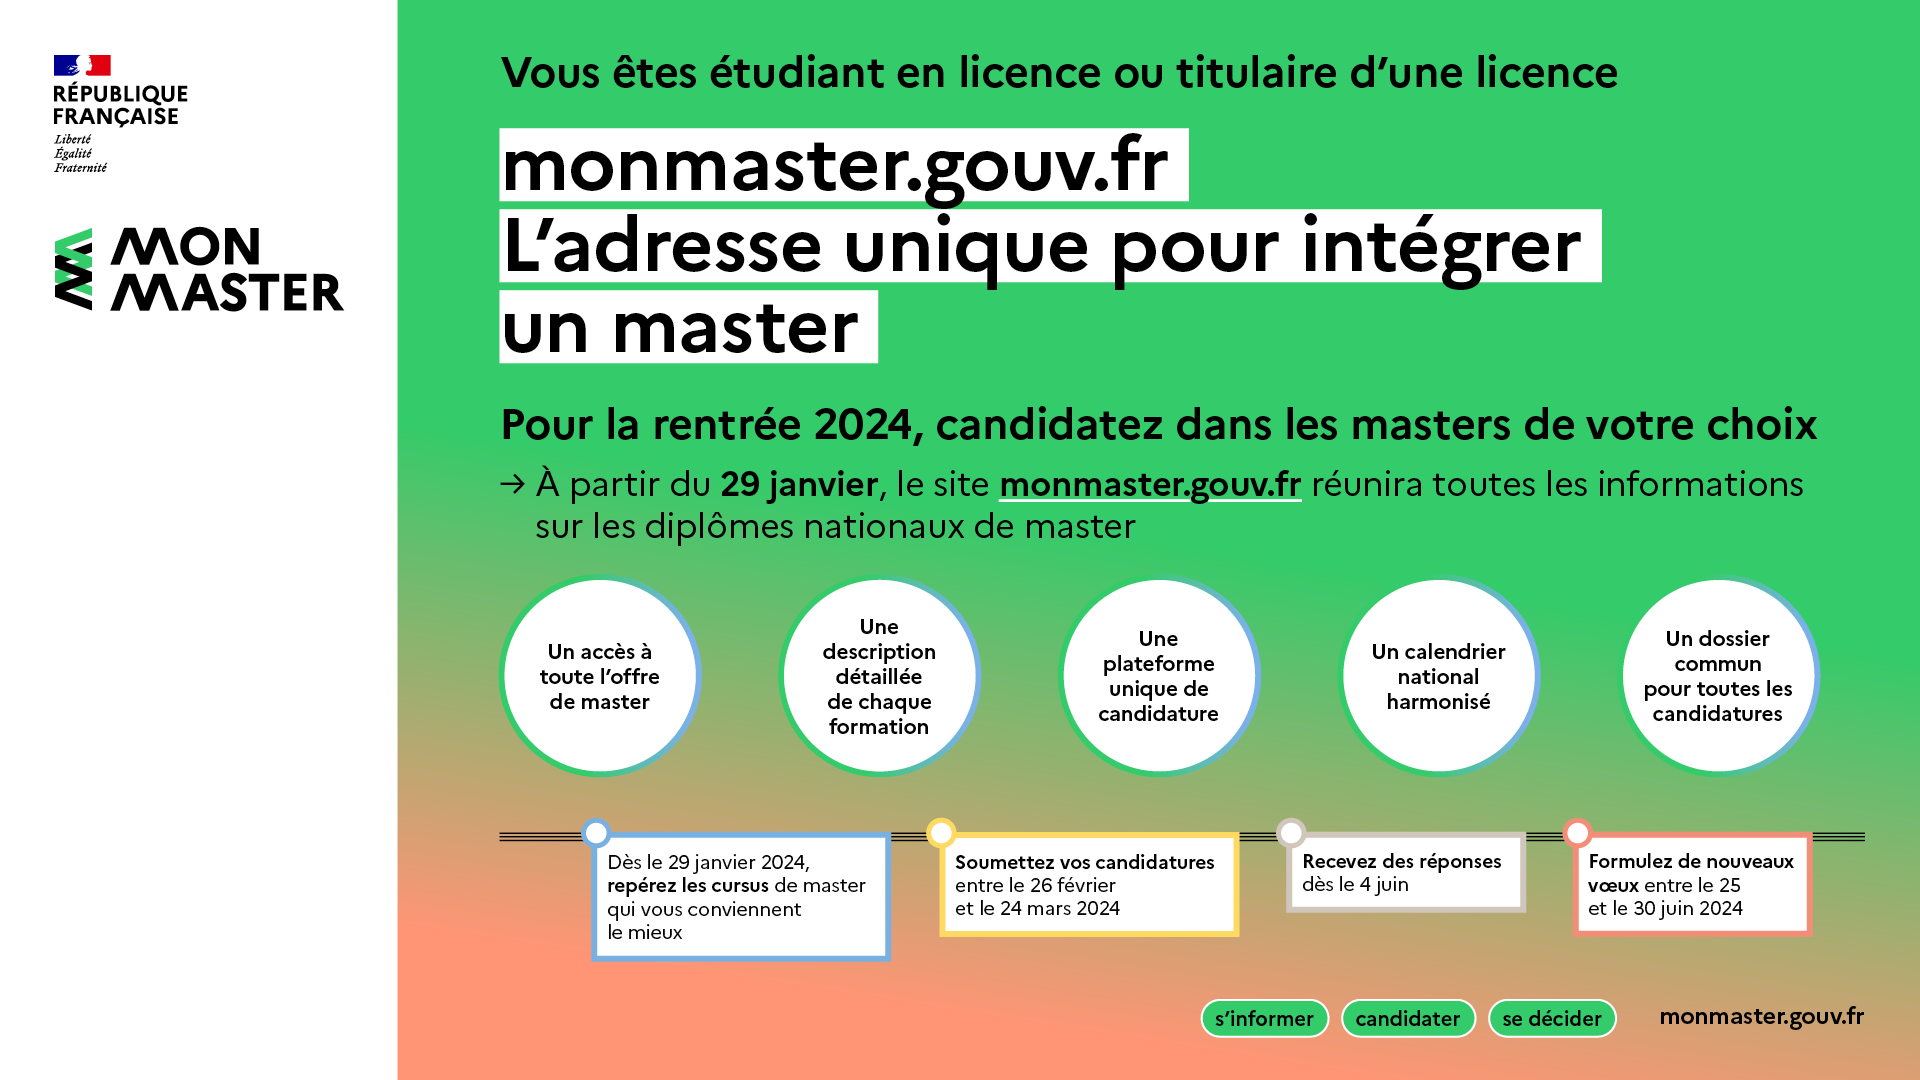 À partir du 29 janvier, le site monmaster.gouv.fr réunira toutes les informations sur les diplômes nationaux de master